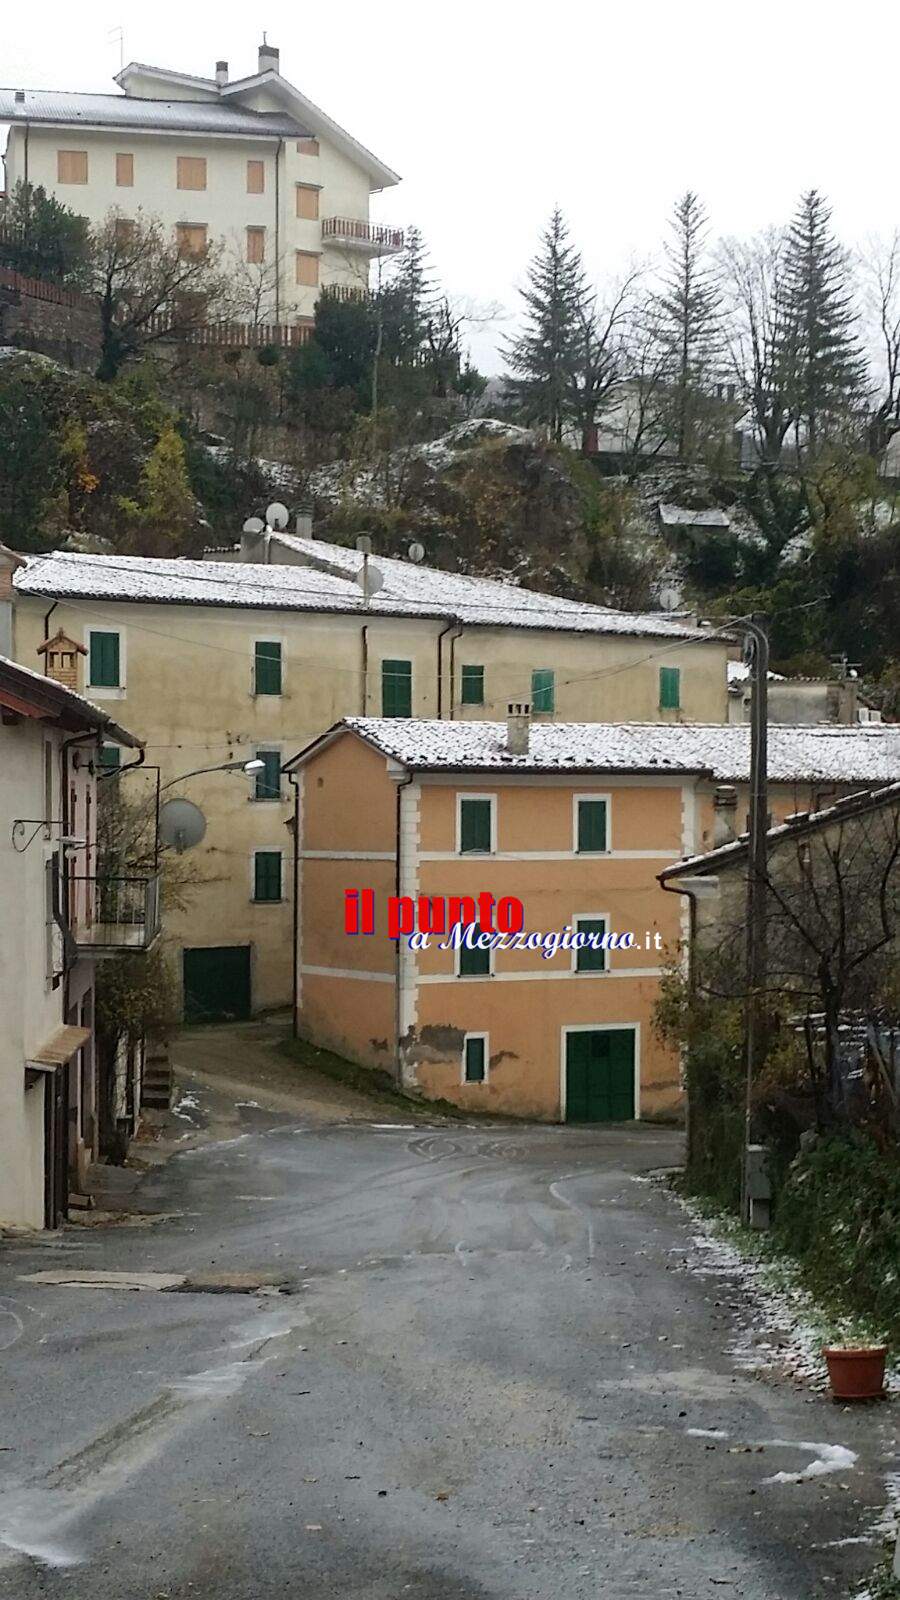 Prima neve in Ciociaria, Filettino si sveglia con i tetti imbiancati